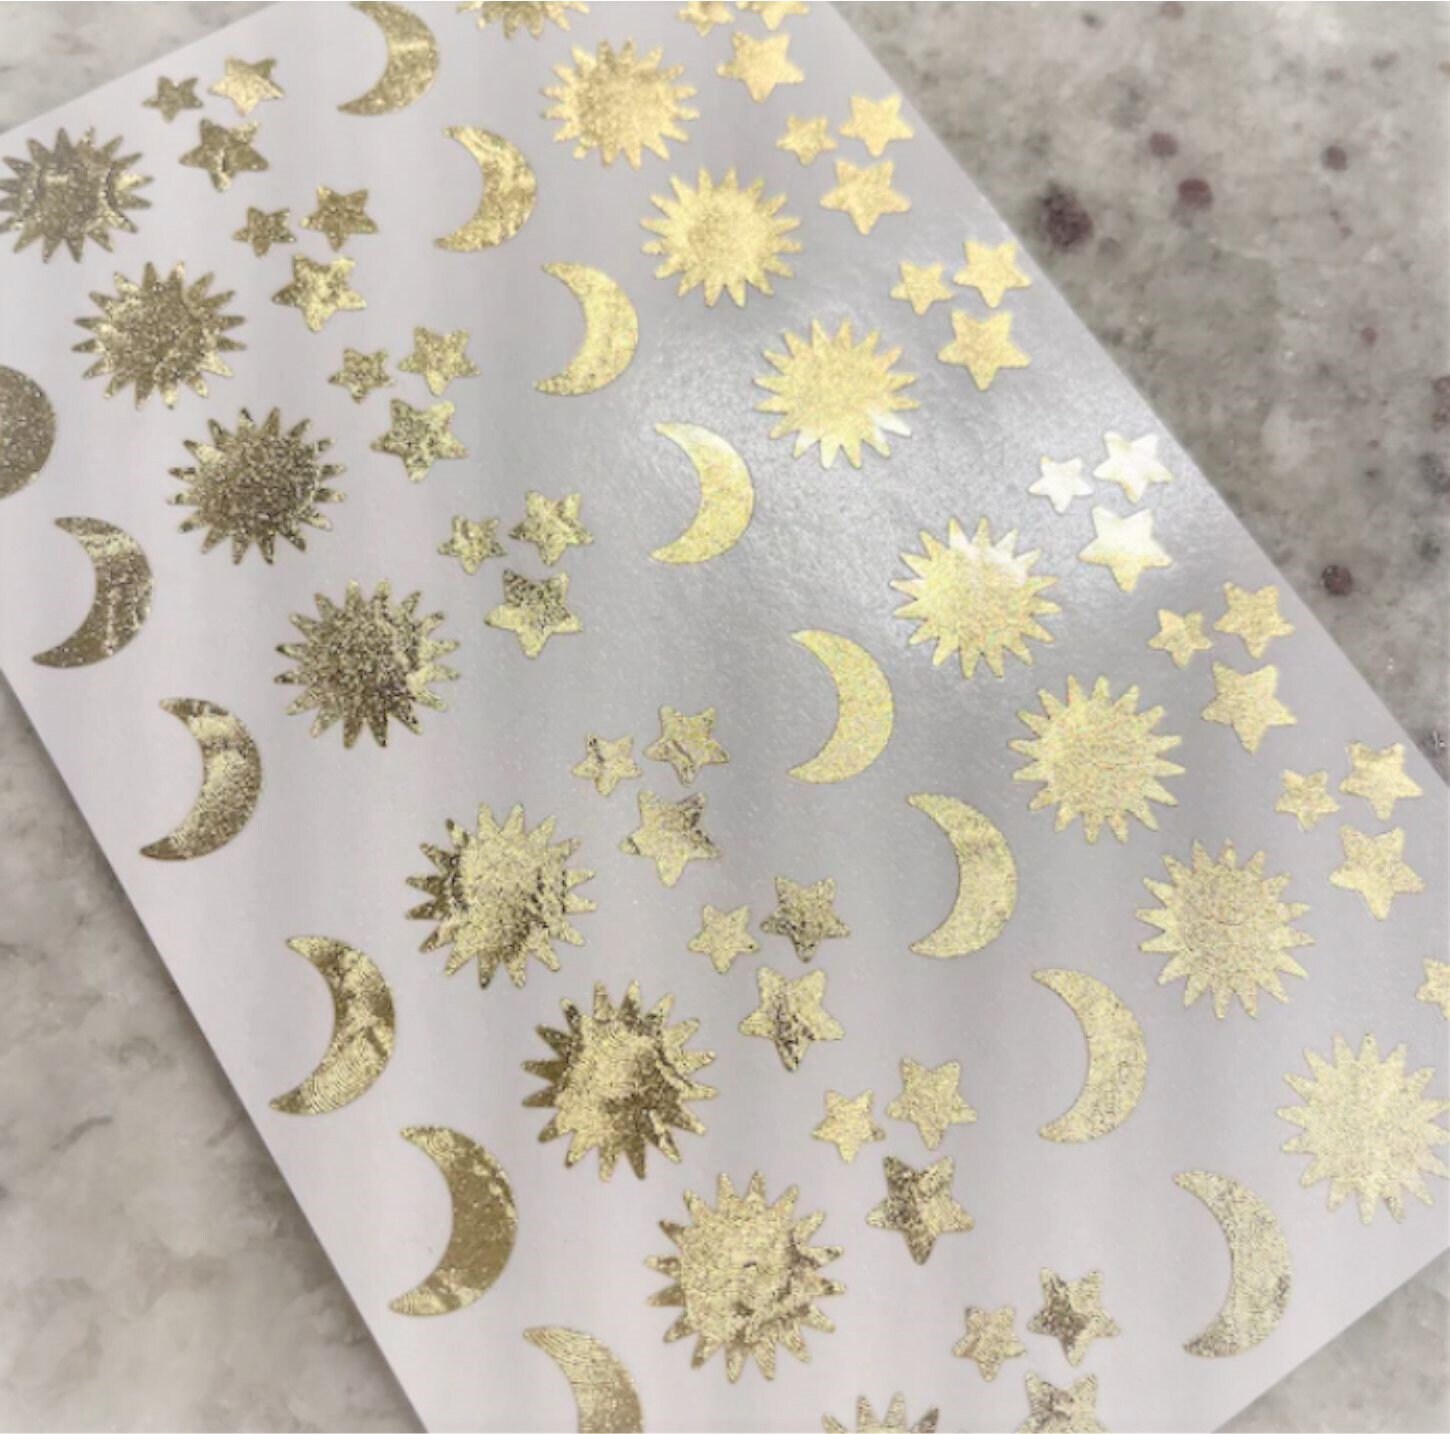 Seven Pointed Gold Starburst Sticker Sheet, Set of 48 Sparkly Star